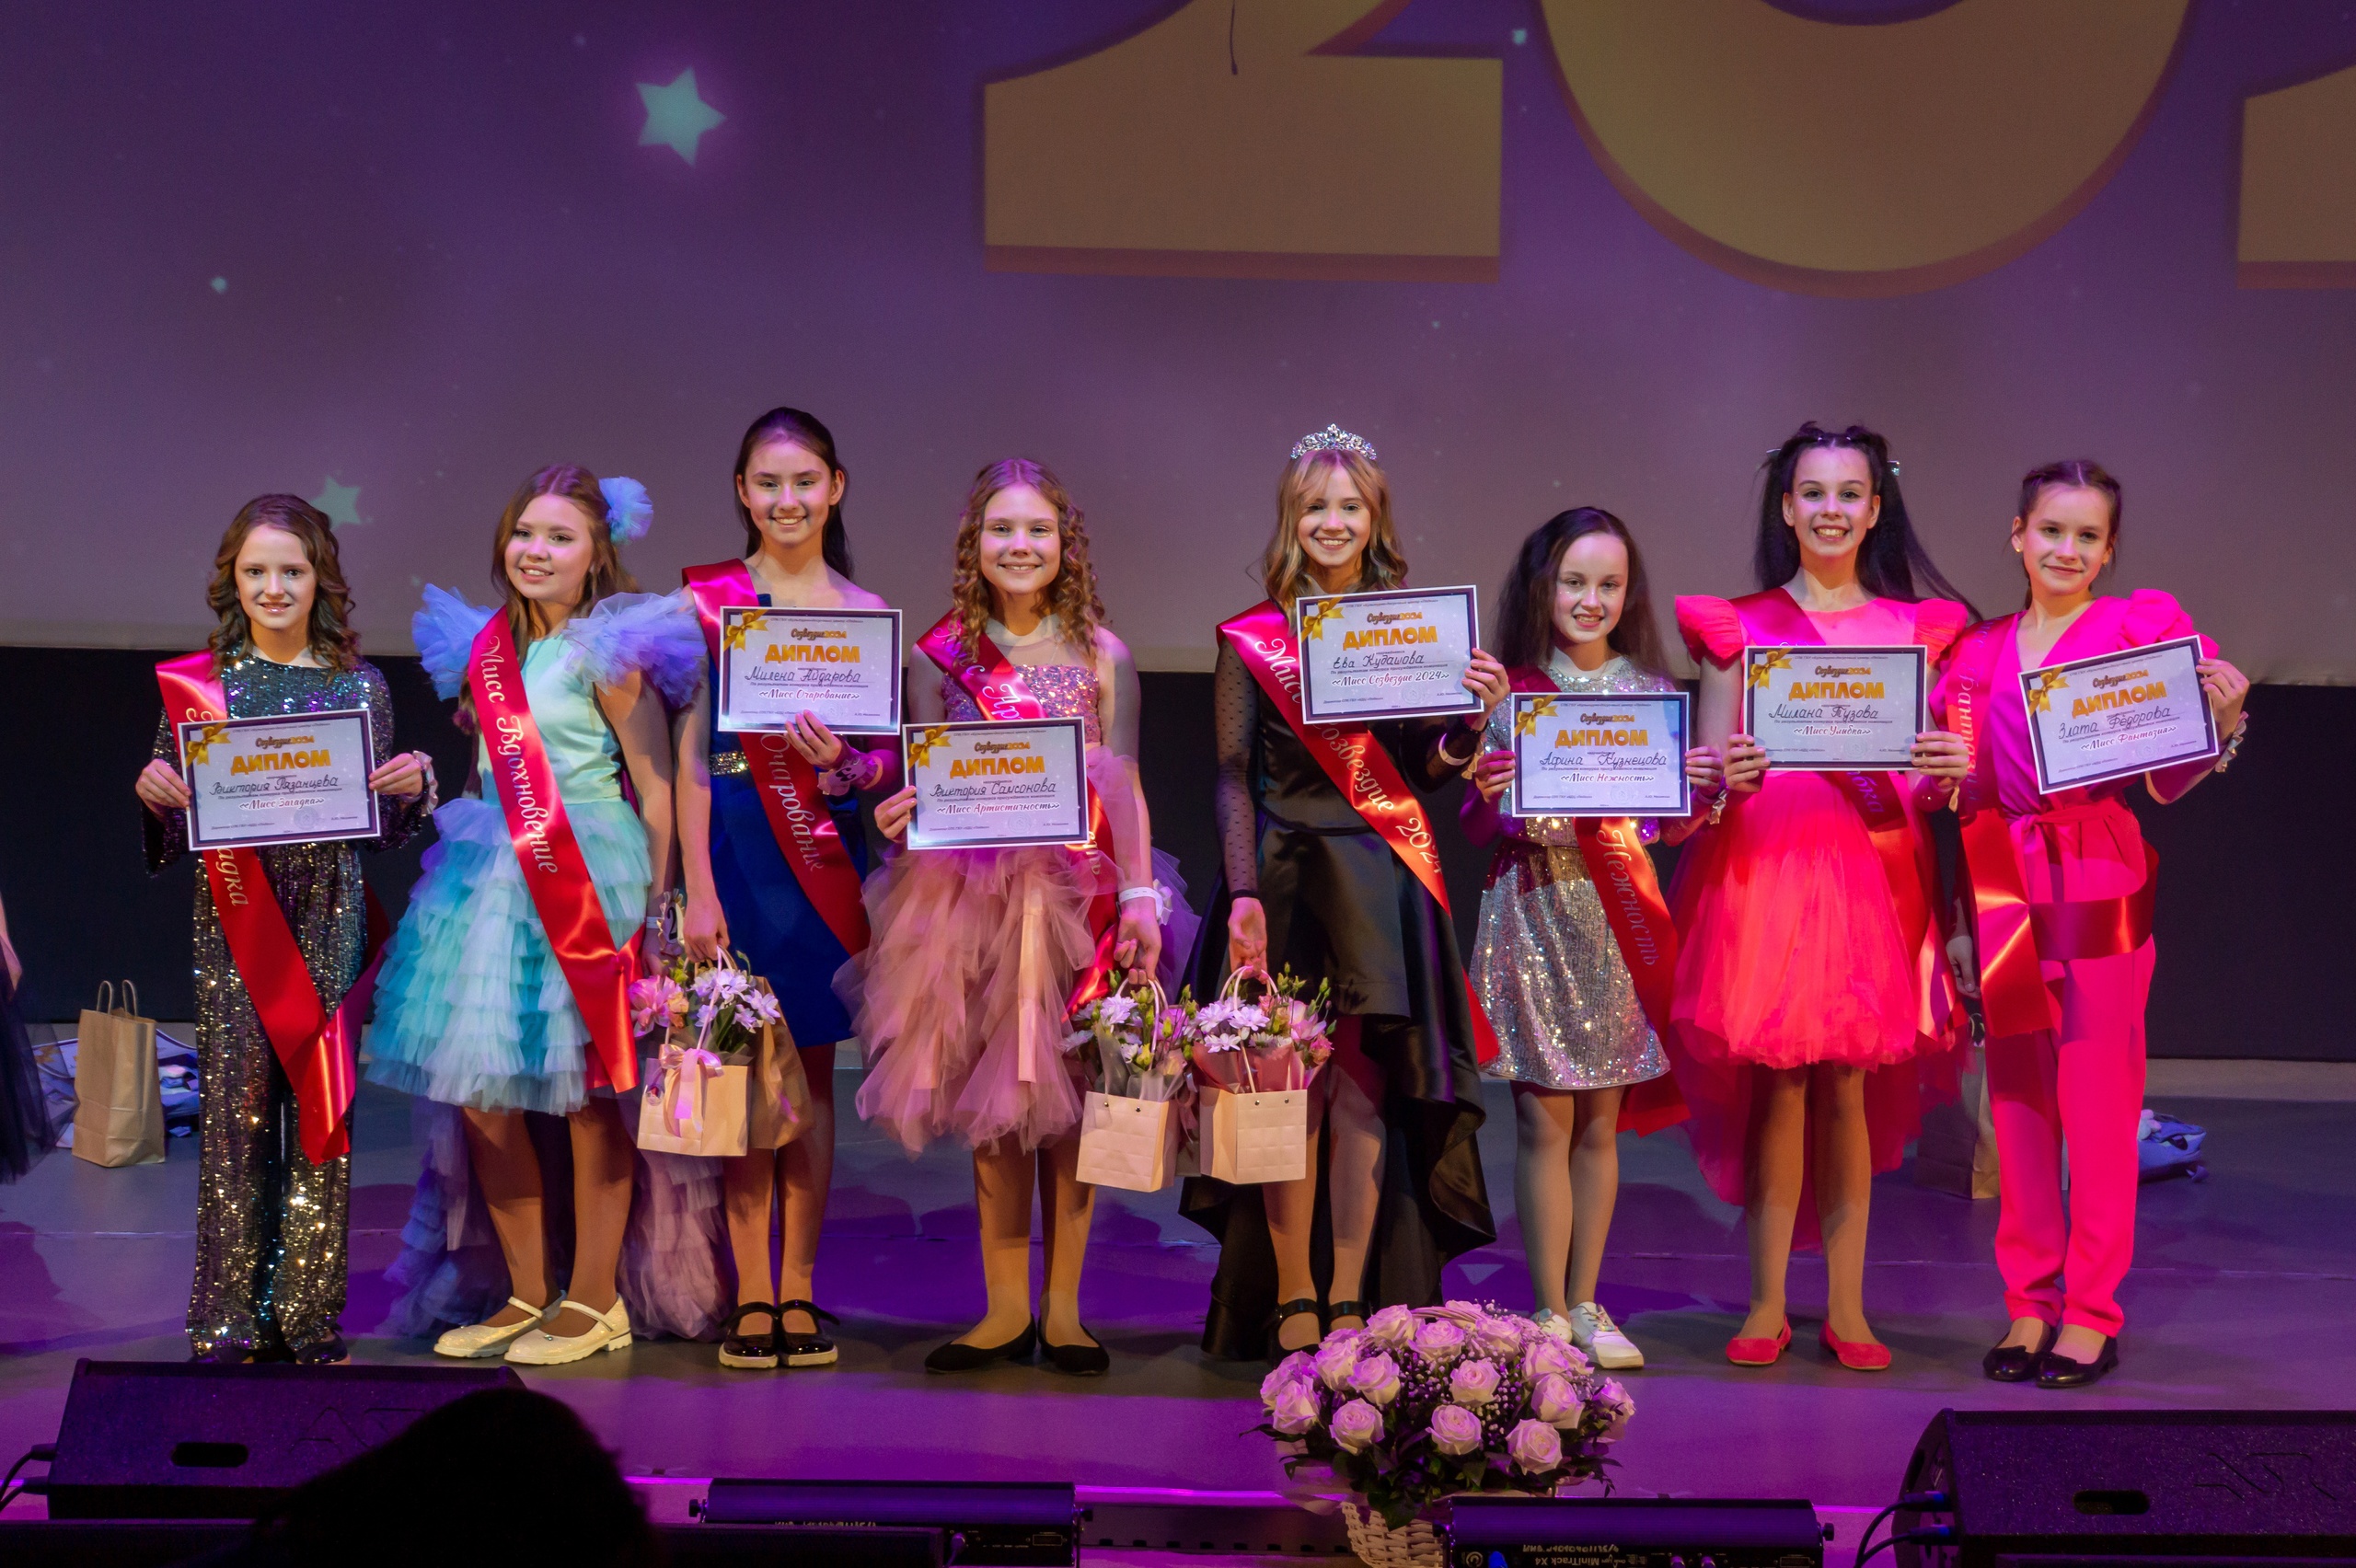 Завершился ежегодный творческий конкурс «Созвездие»! Мы провели его для талантливых девочек Колпинского района уже в семнадцатый раз.